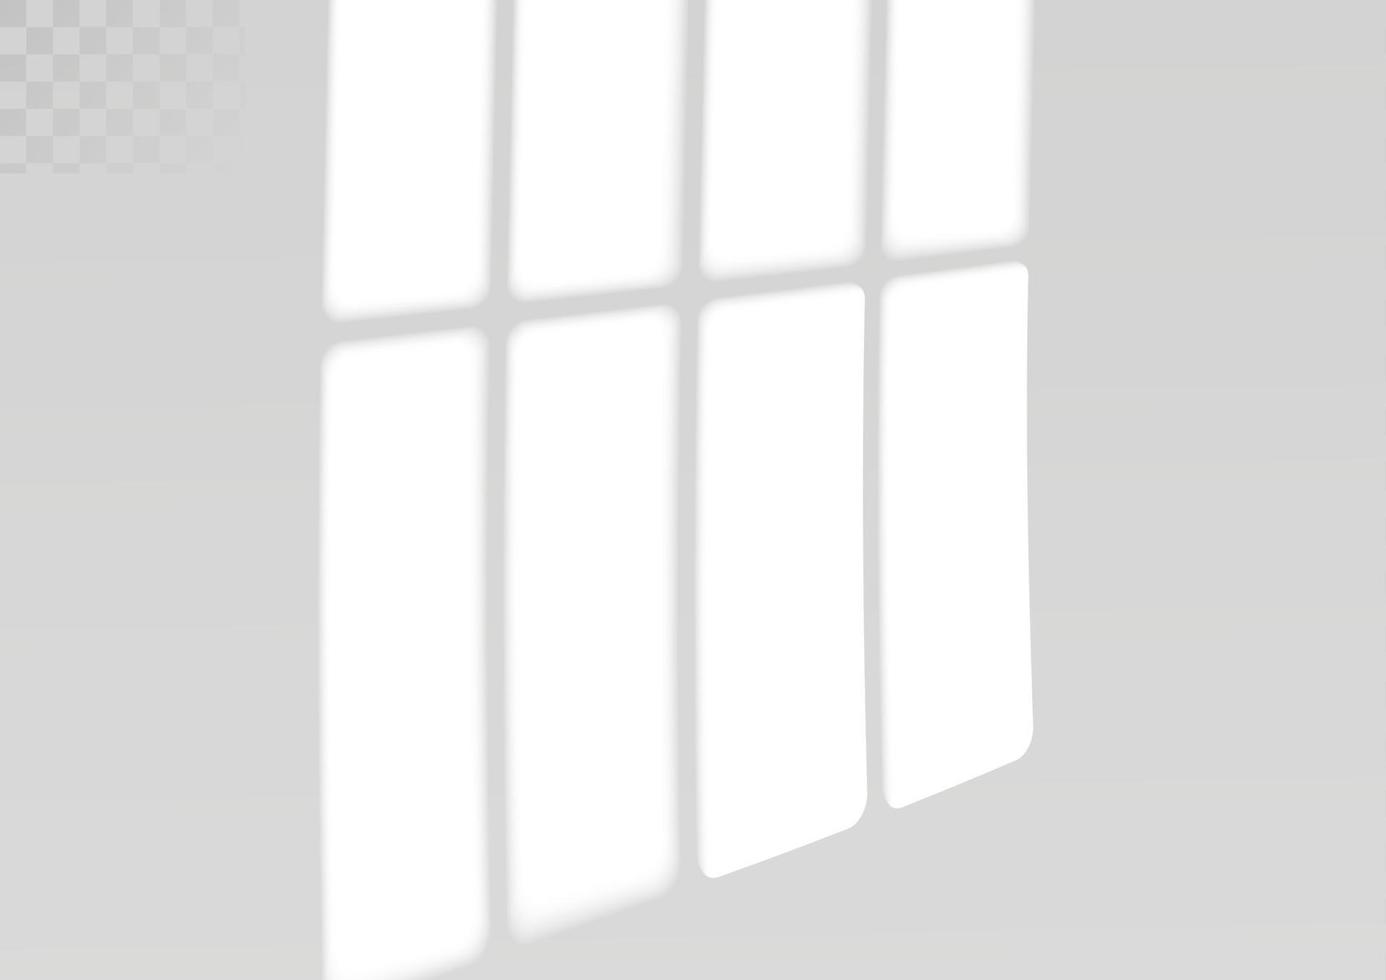 sombra de janela e persianas. efeito de luz realista de sombras e iluminação natural. ilustração vetorial vetor